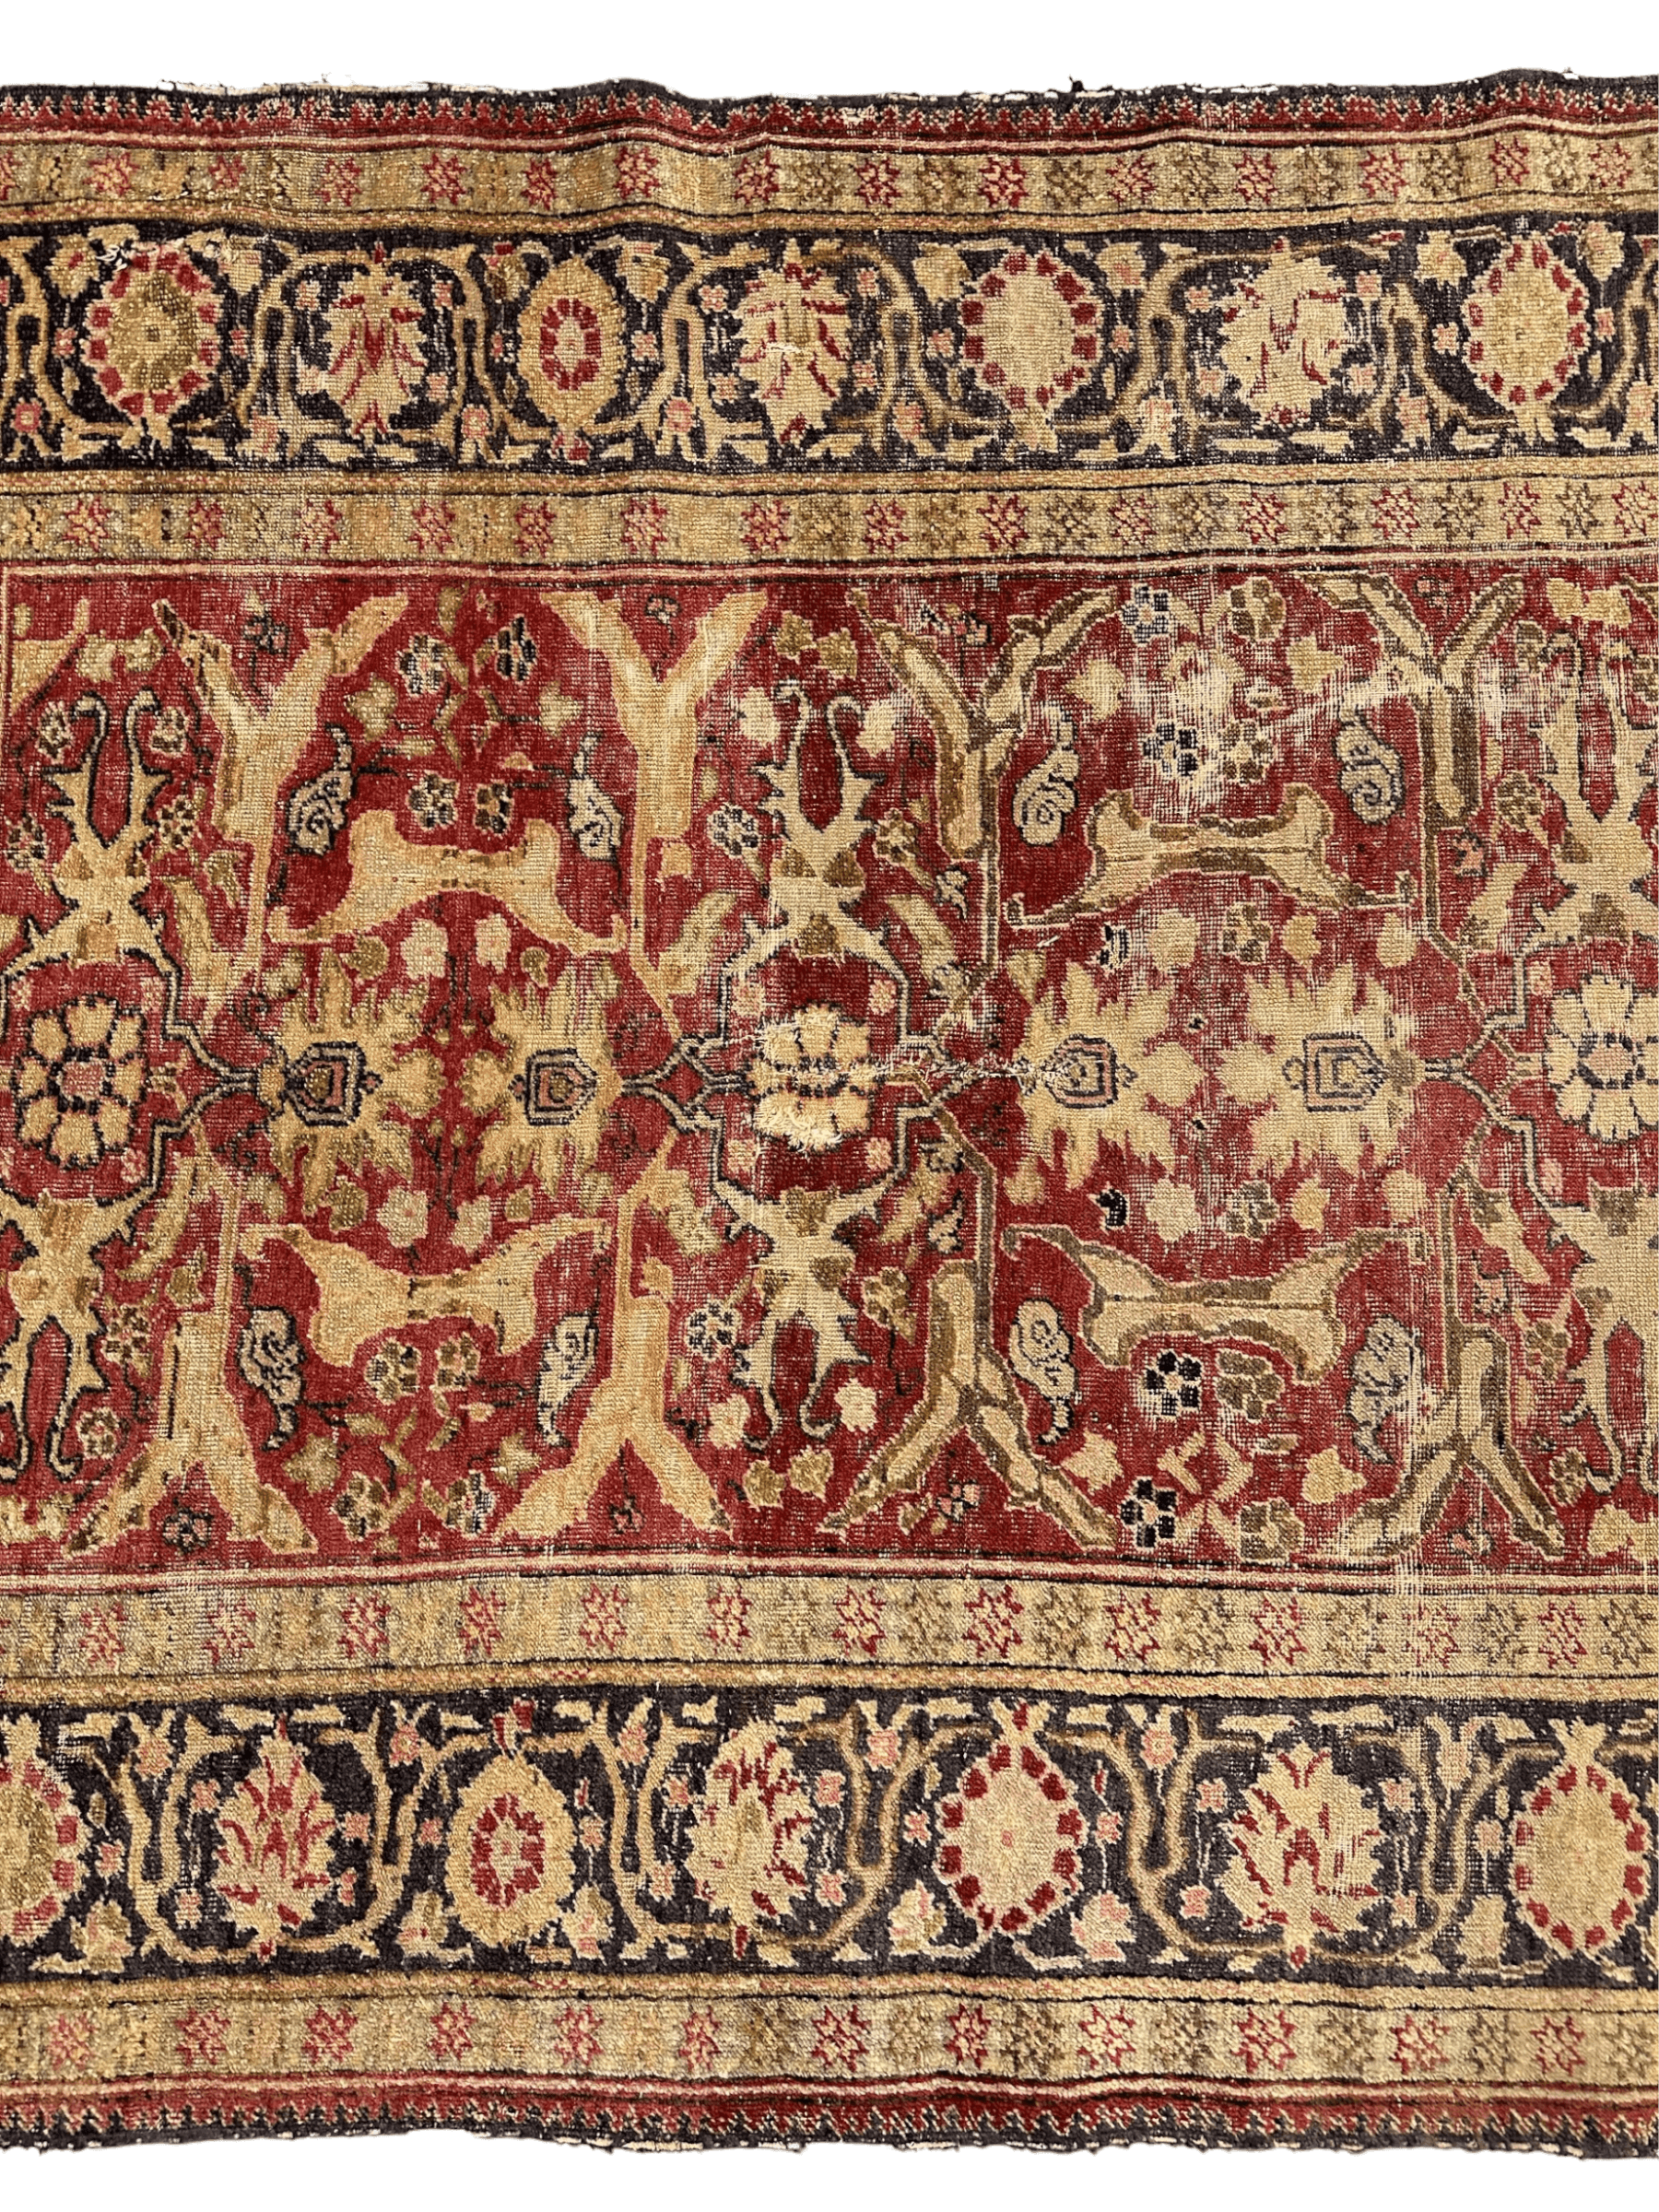 Circa 1900 Antique Persian Mahal Rug 4’5” x 6’4”